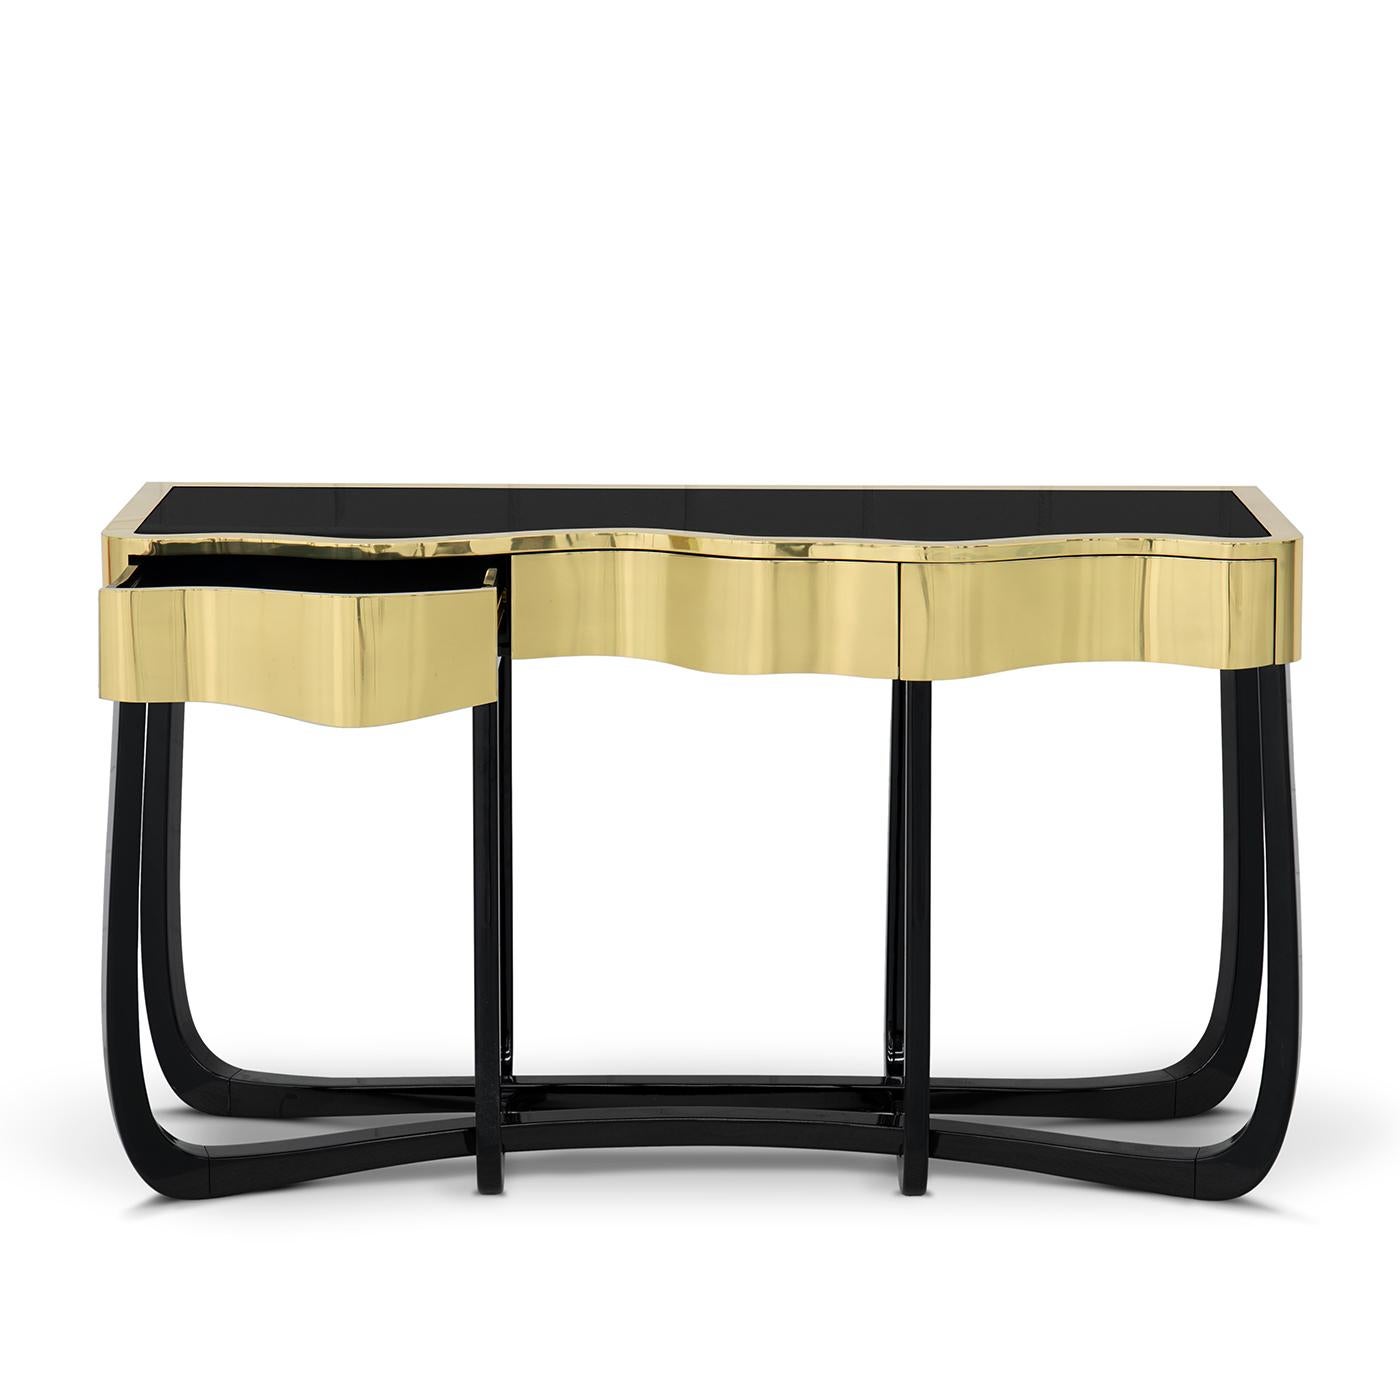 Table console curvy gold avec finition en laiton poli doré 
structure supérieure et avec un plateau en verre noir. Avec des pieds en acajou 
en finition laquée noire.
Disponible également en finition supérieure en laiton patiné ou en finition